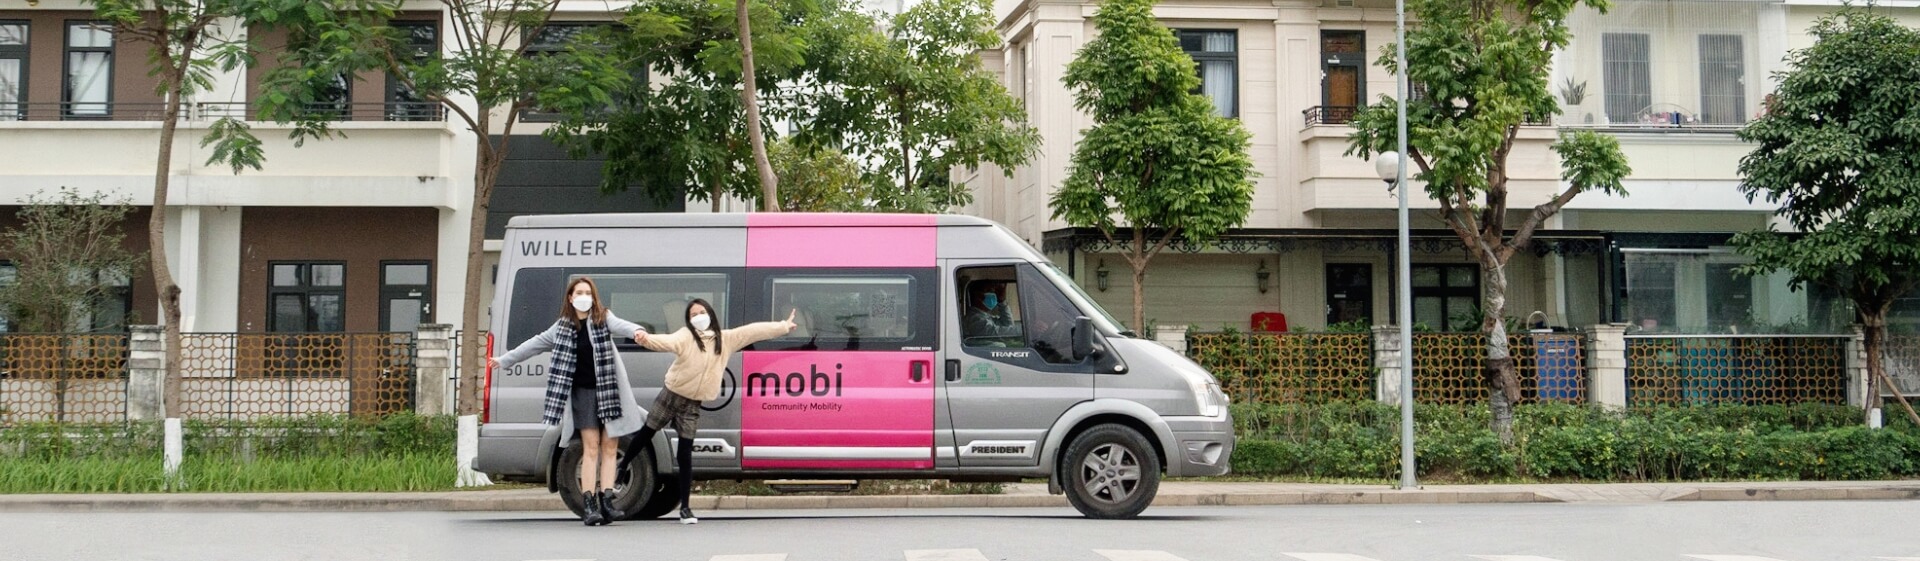 mobi bus